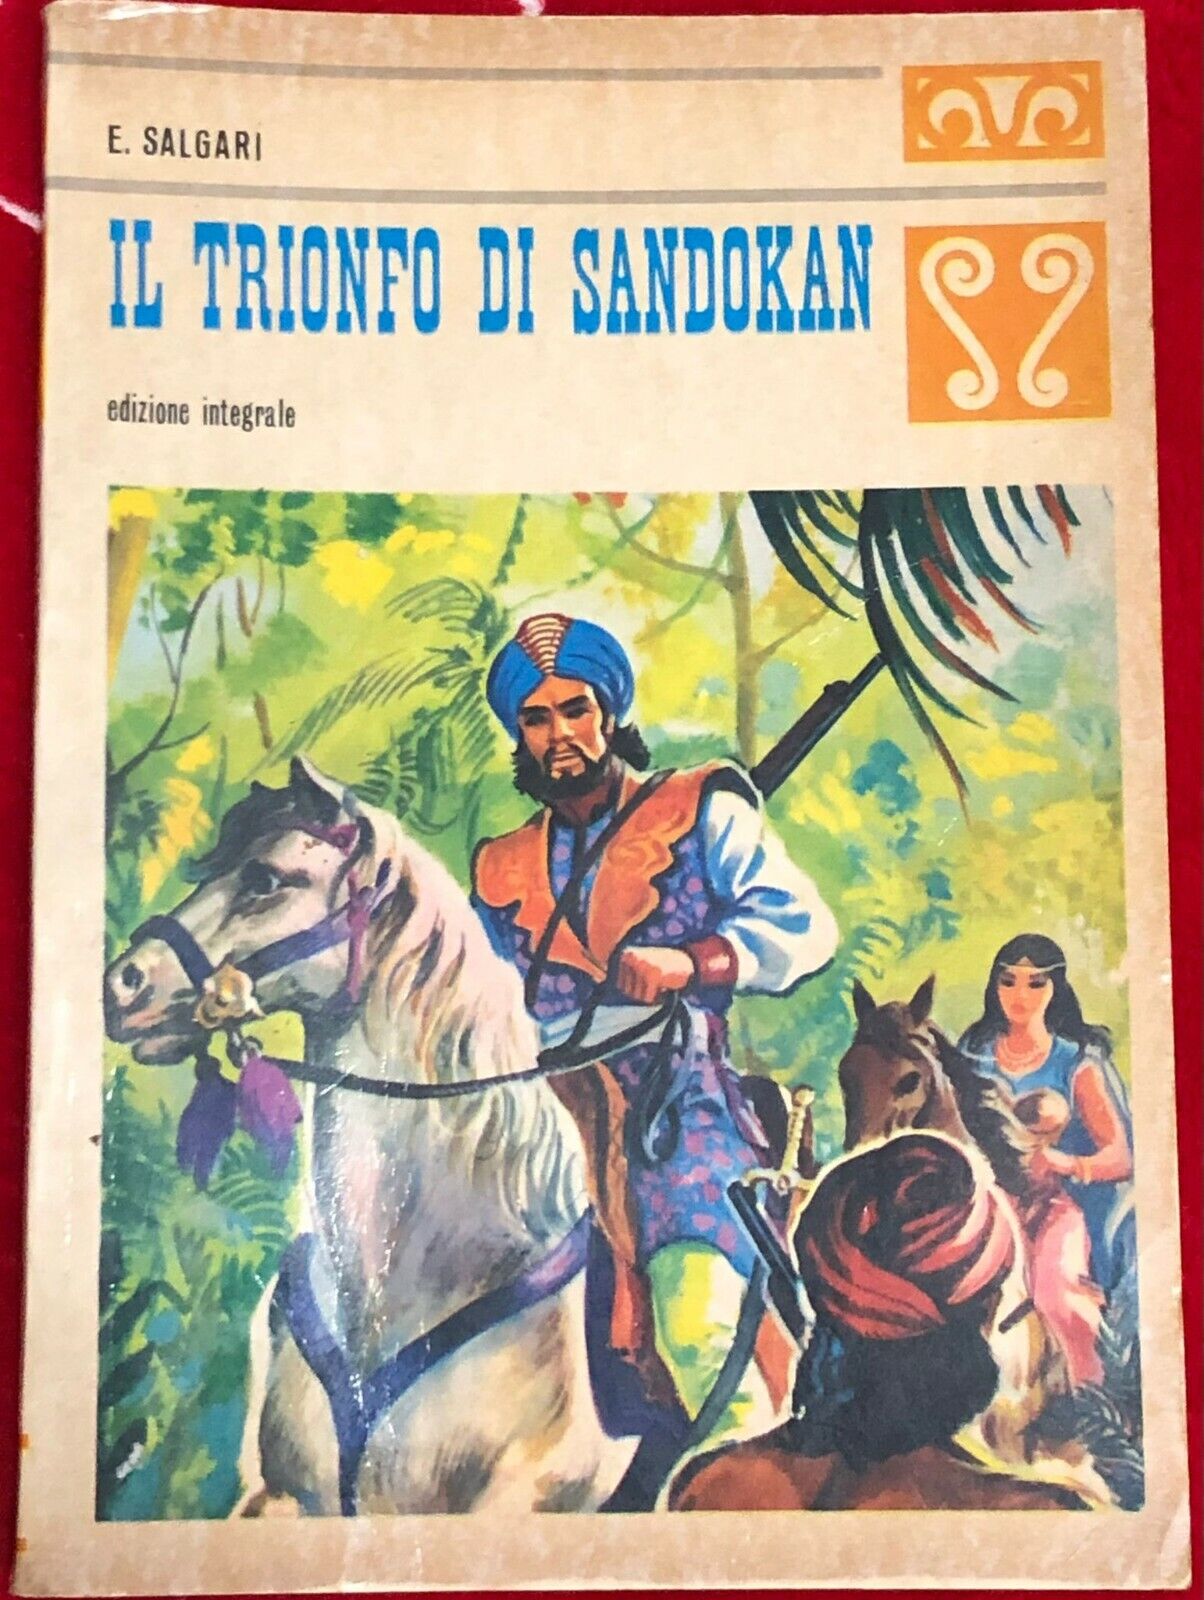 Il trionfo di Sandokan di Emilio Salgari,  1973,  Malipiero Spa Editore